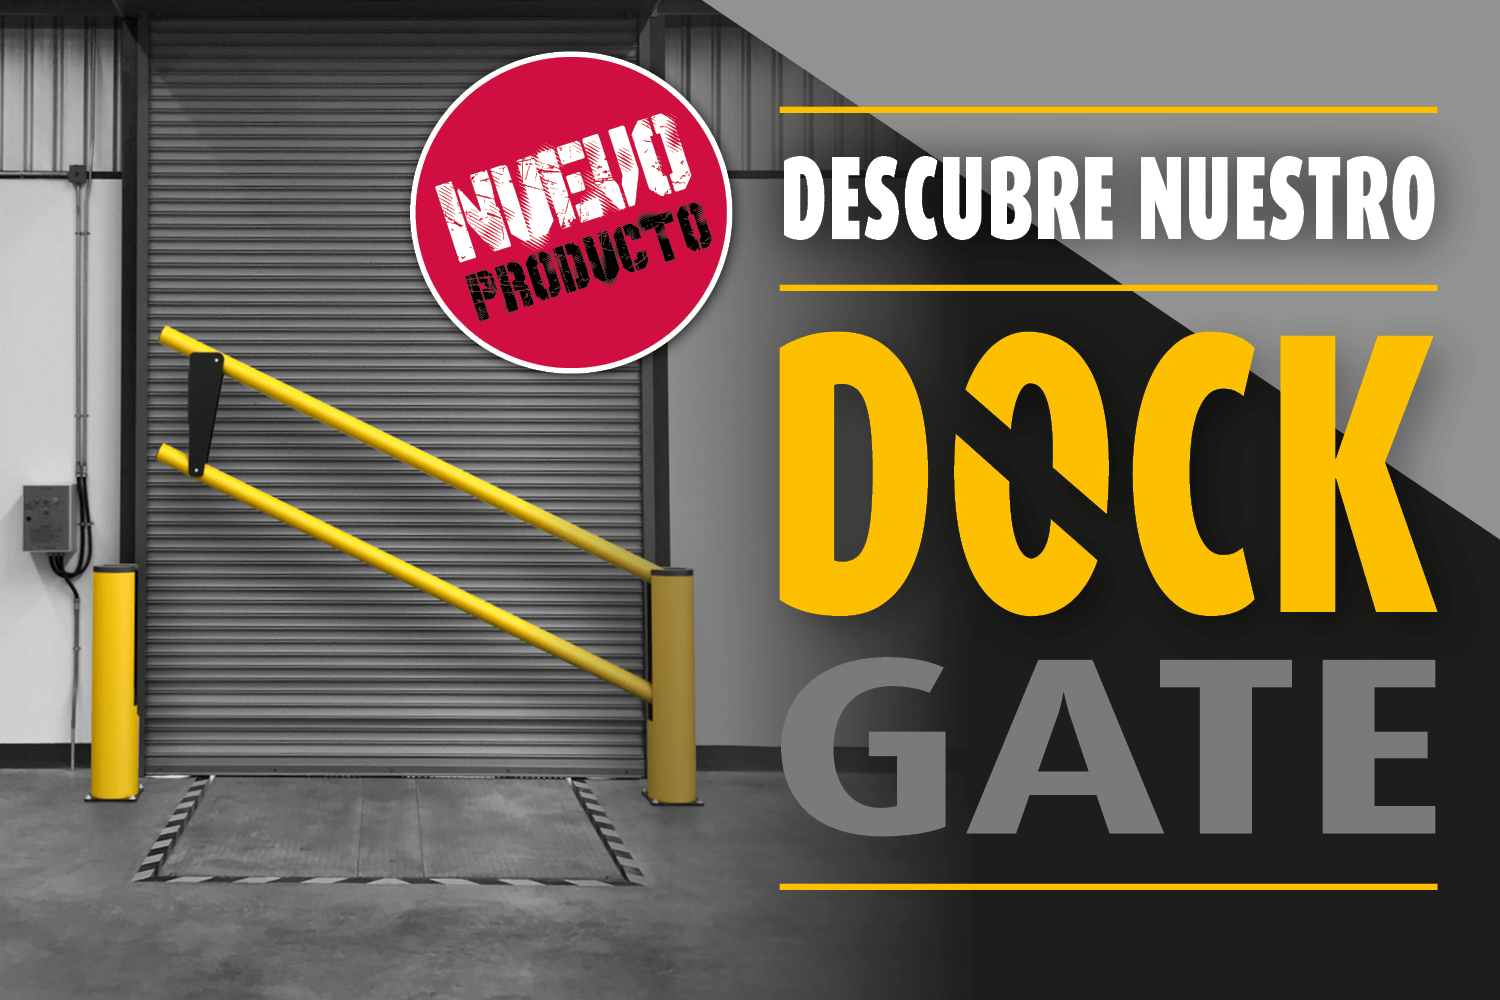 Dock Gate, barreras de seguridad muelles de carga